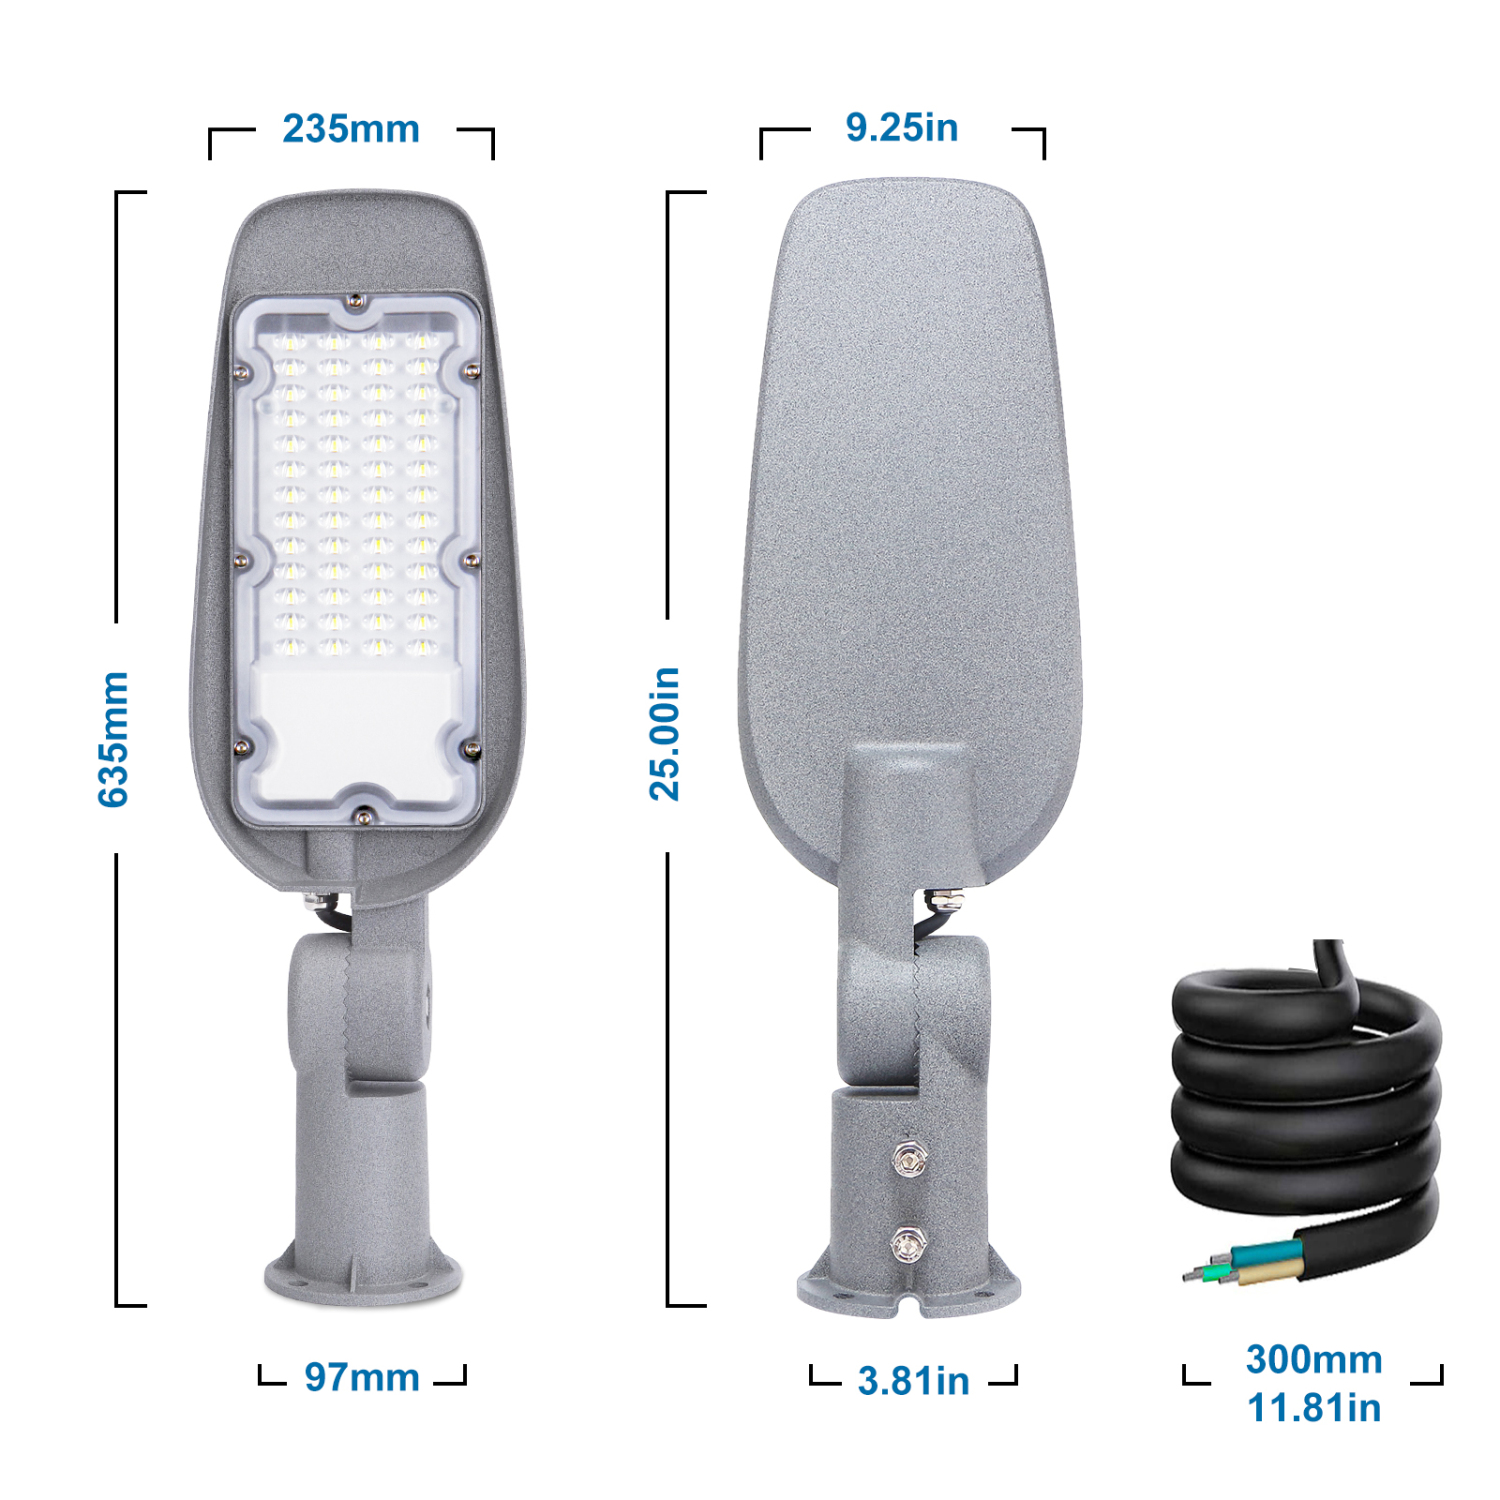 Aigostar 200W Luce stradale a LED, 20000LM luci LED per esterni 6500K IP65 impermeabile IK07 LED per parcheggio luce per strada scuola, parcheggio, campo da basket, cortile, piazza